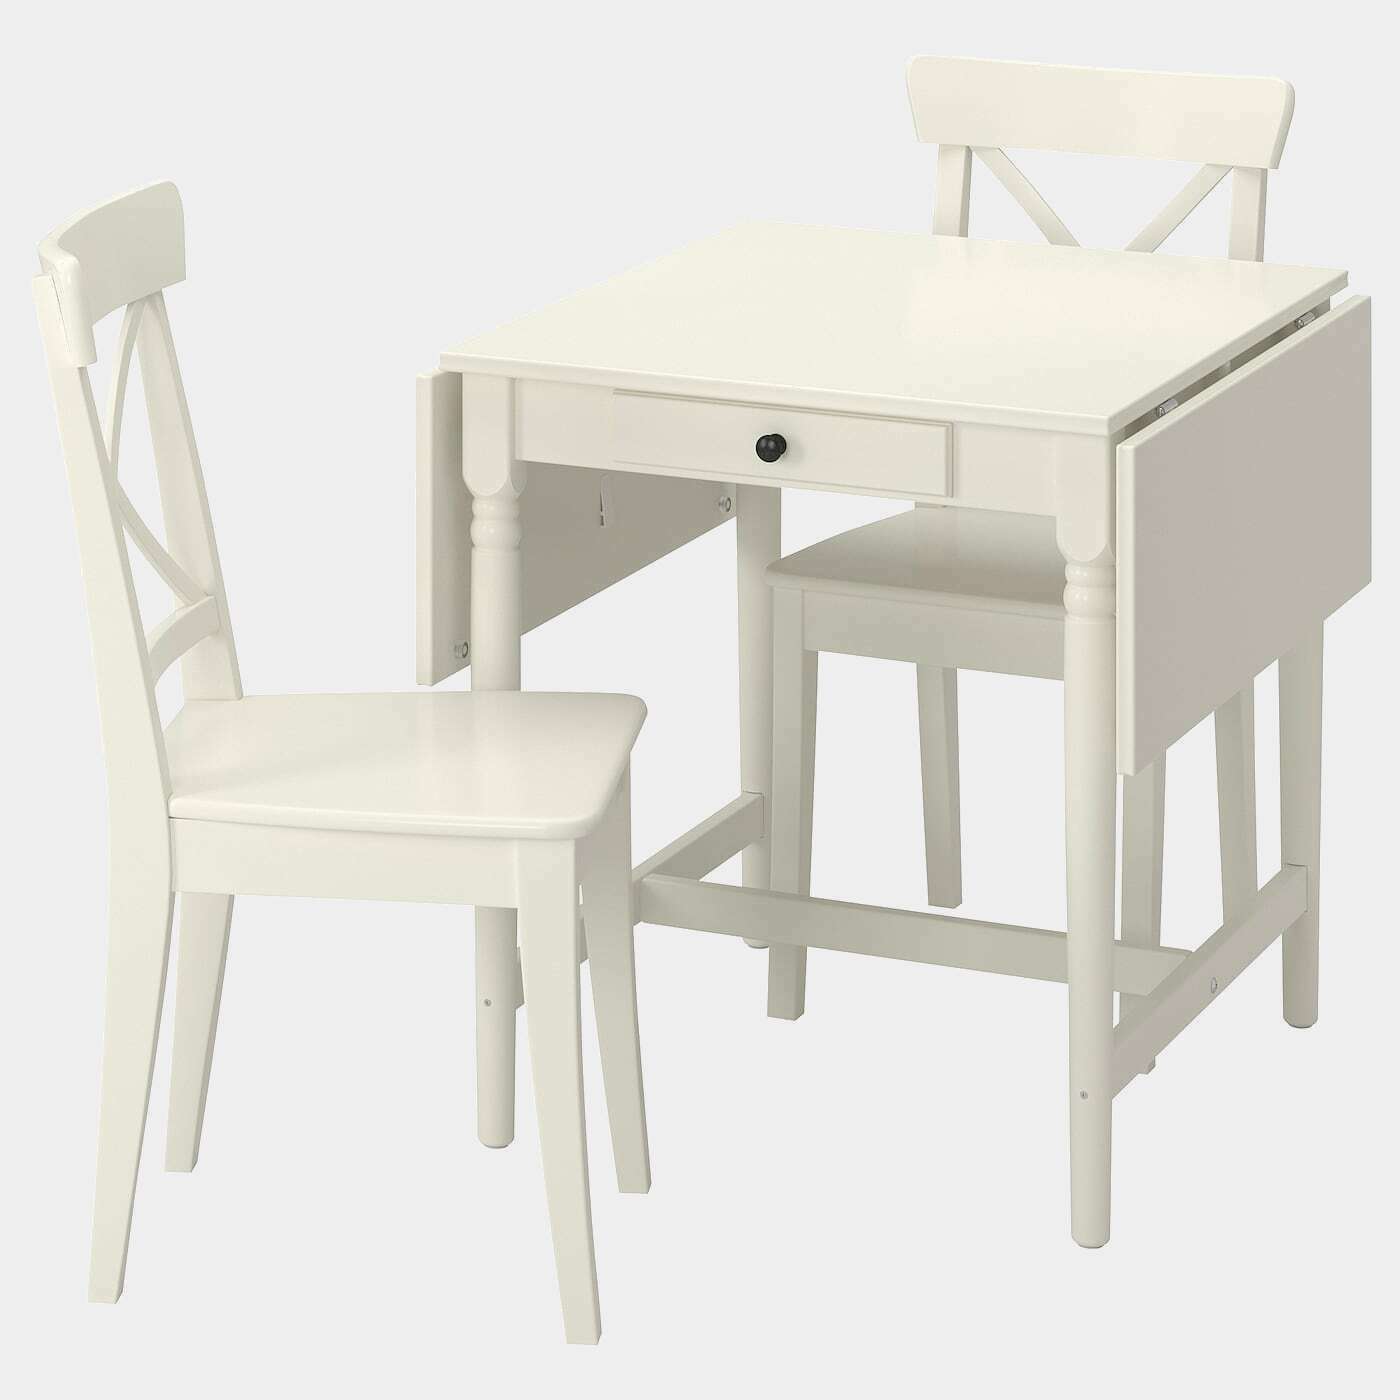 INGATORP / INGOLF Tisch und 2 Stühle  -  - Möbel Ideen für dein Zuhause von Home Trends. Möbel Trends von Social Media Influencer für dein Skandi Zuhause.